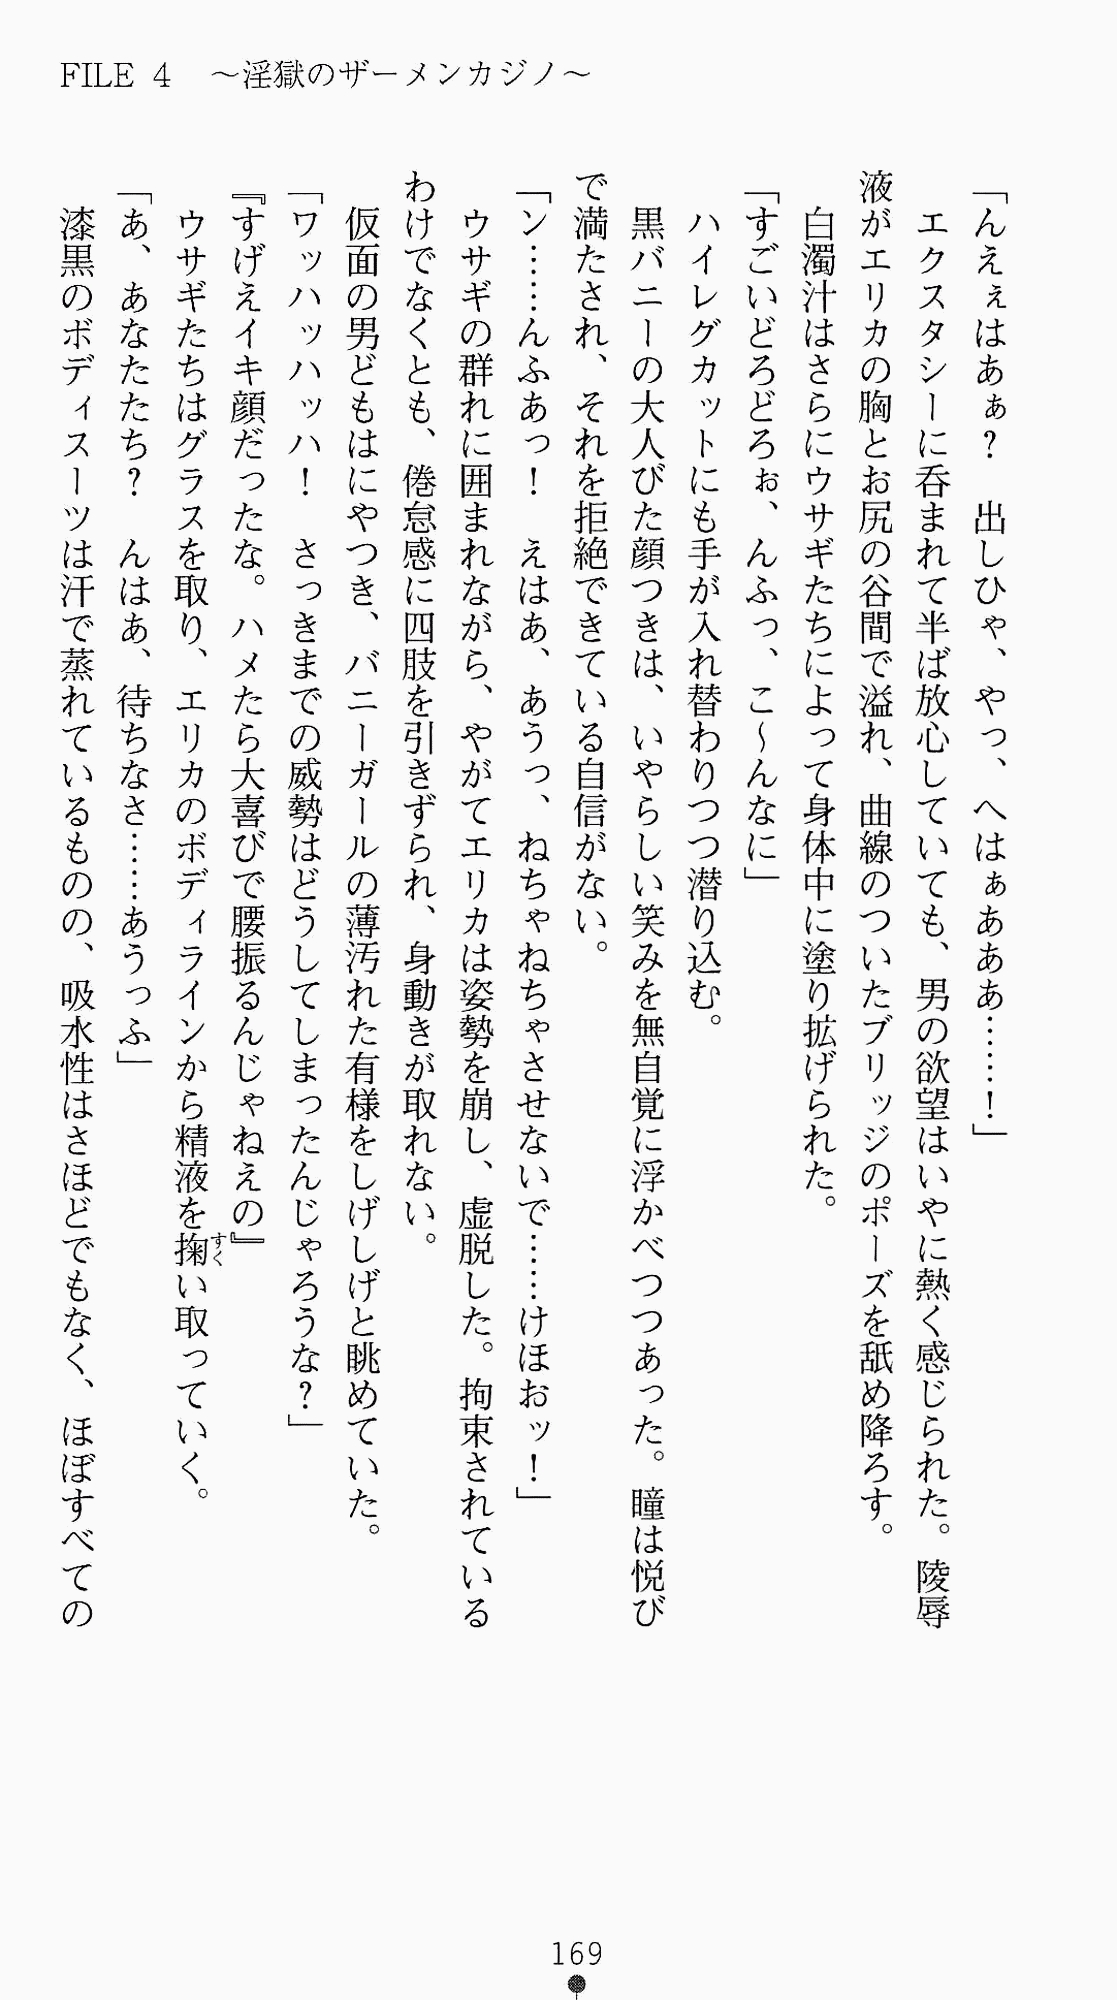 [Kagura Youko, Takahama Tarou] Shiritsu Tantei Takasuga Erika no Jikenbo 2 - Chijouha AV Satsuei 24-ji 184